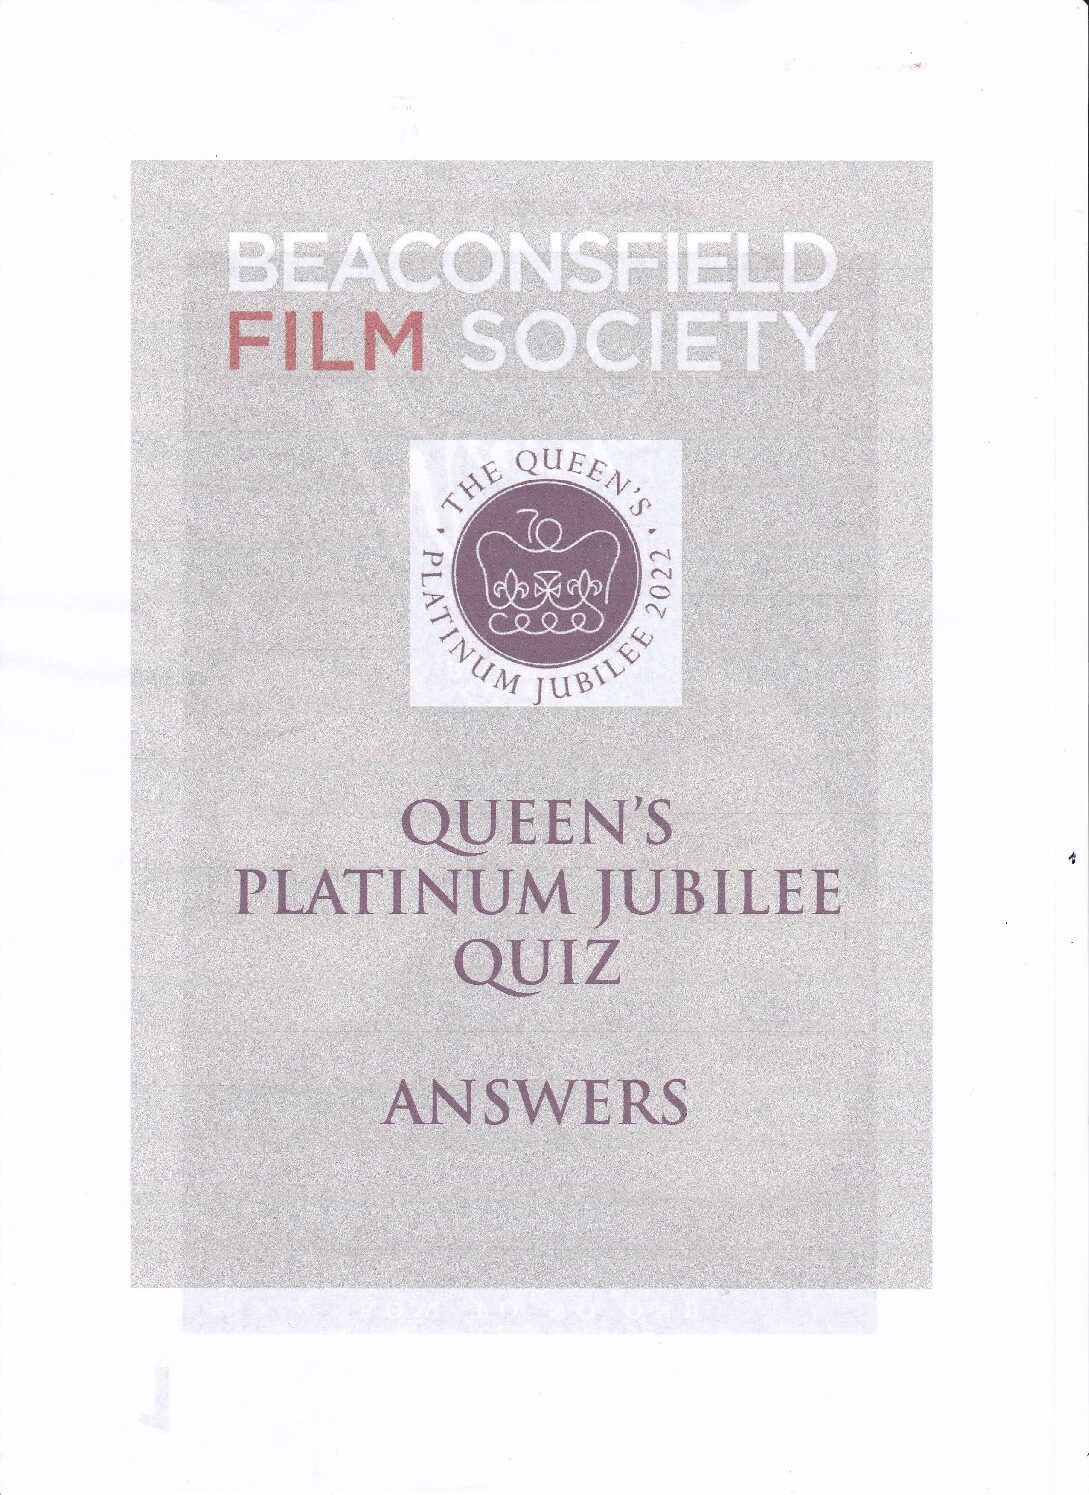 Our Queens Platinum Jubilee Quiz